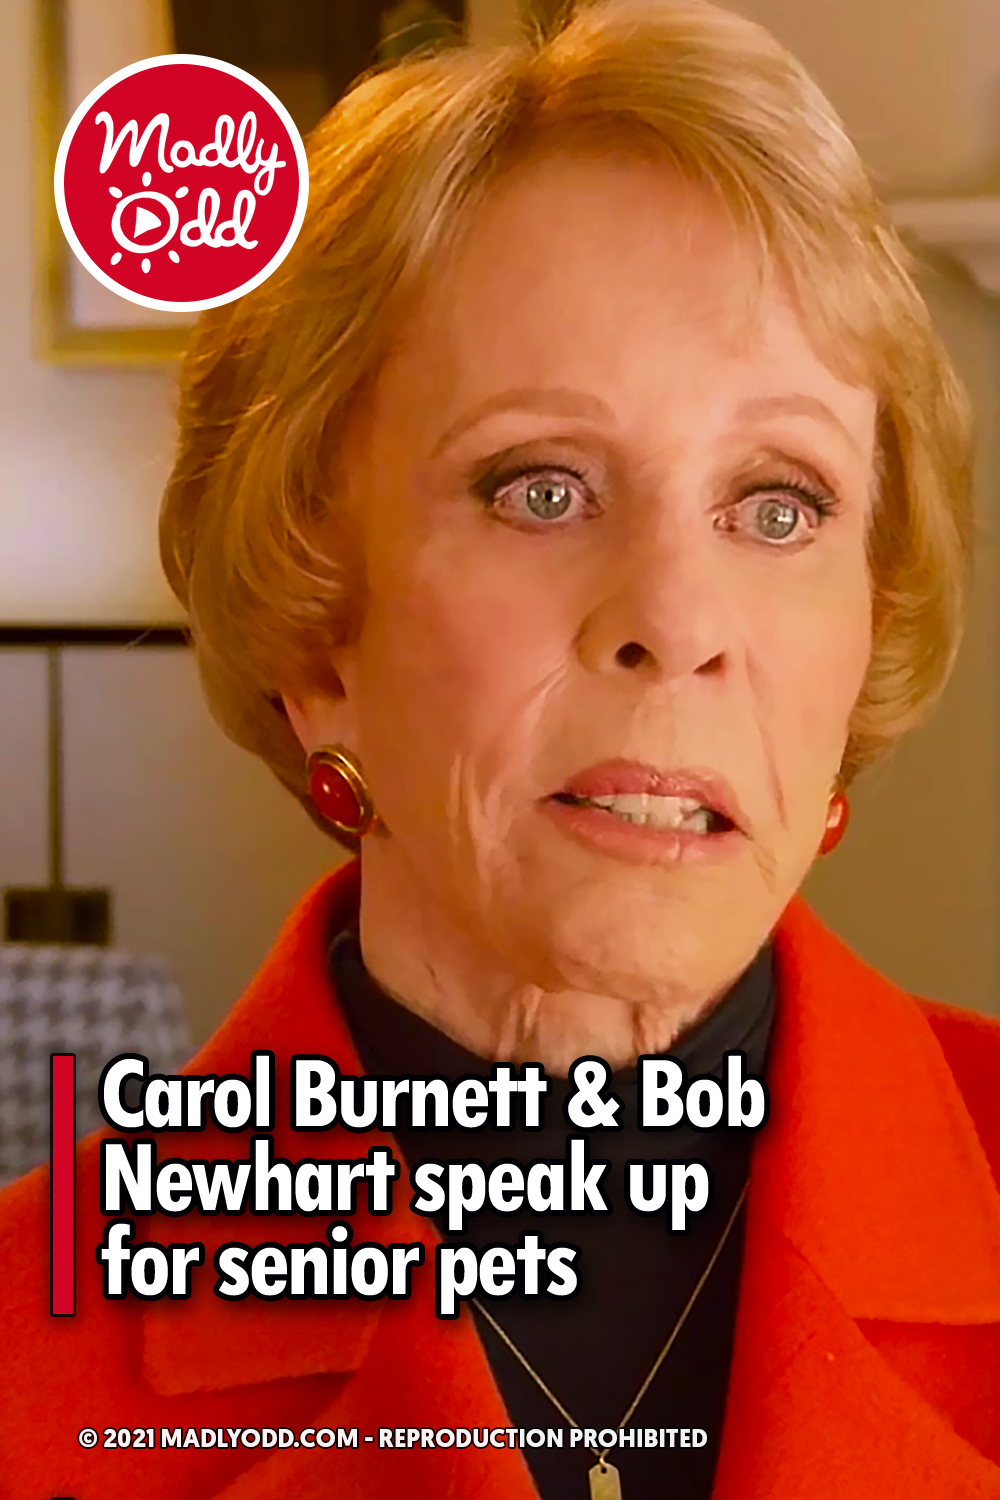 Carol Burnett & Bob Newhart speak up for senior pets